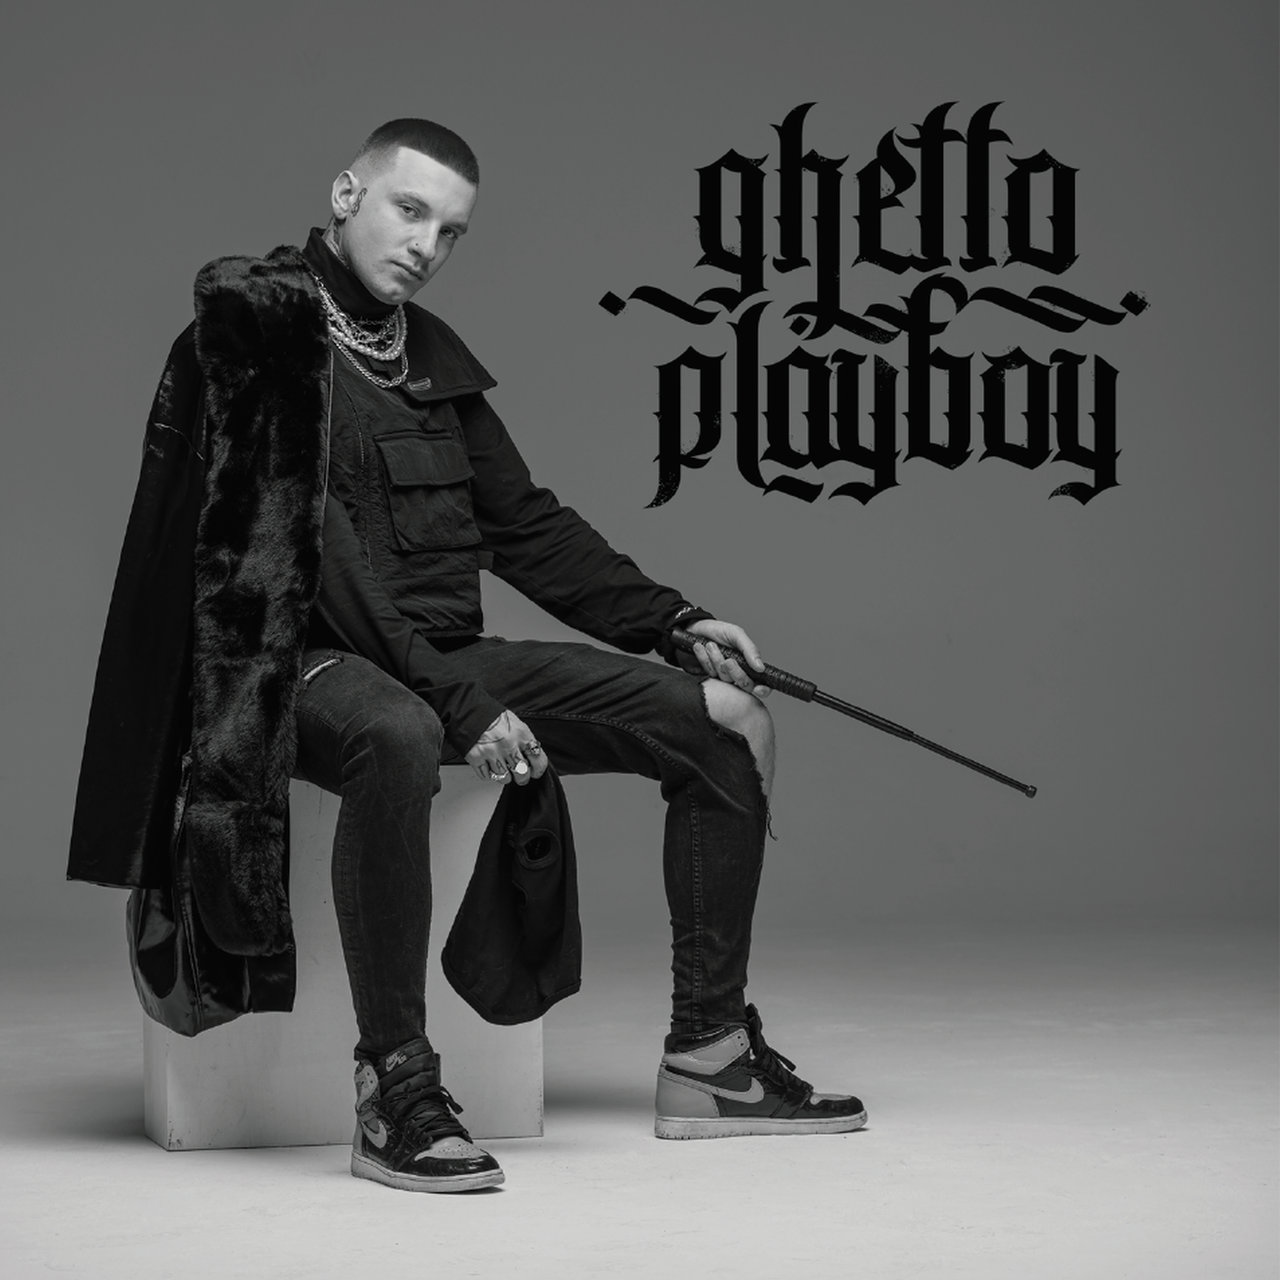 Na styku r’n’b i trapu można być w Polsce profesjonalnym, nie będąc sztucznym i bezdusznym – Marcin Flint recenzuje „Ghetto Playboya” Smolastego